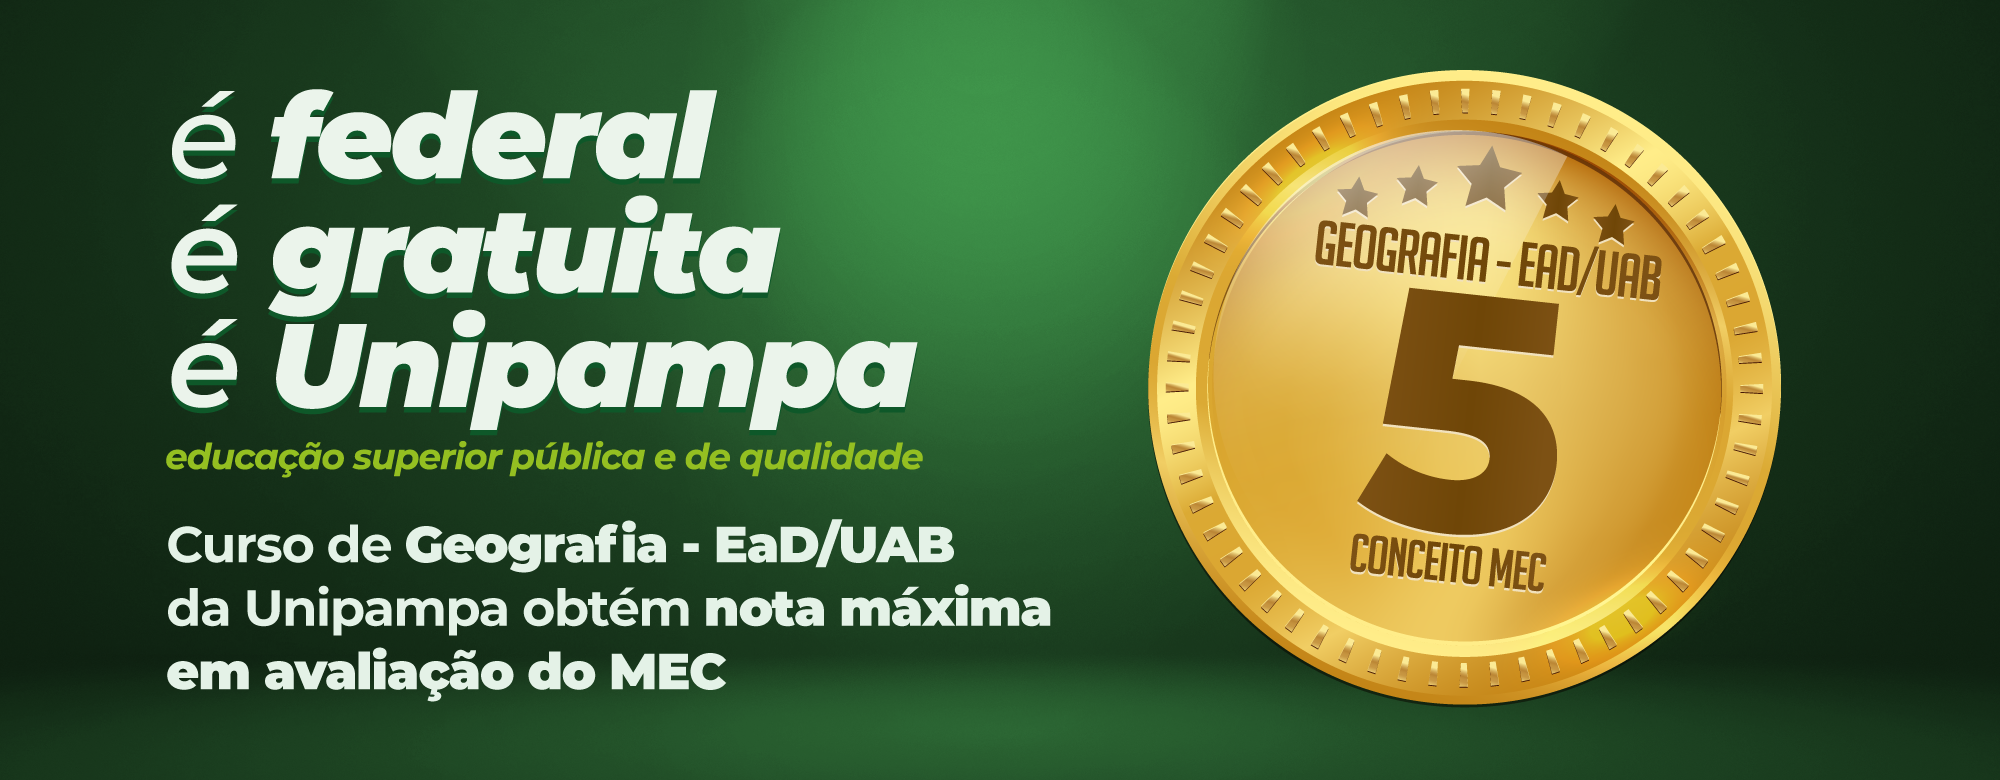 Curso de Geografia EaD/UAB da Unipampa obtém nota máxima na avaliação do MEC